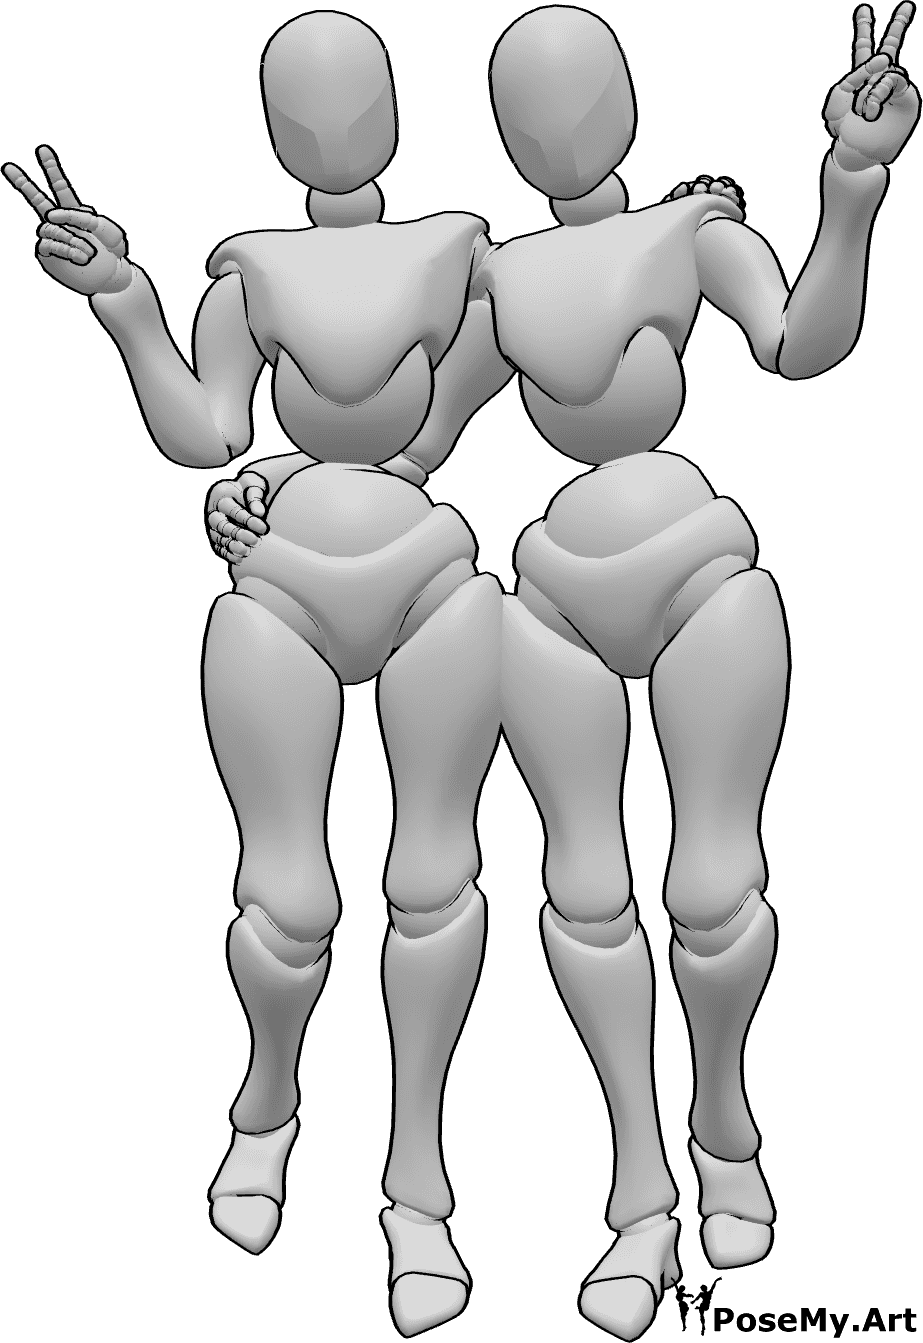 Riferimento alle pose- Femmine in posa con il segno della pace - Due donne in piedi si abbracciano e mostrano il segno della pace.